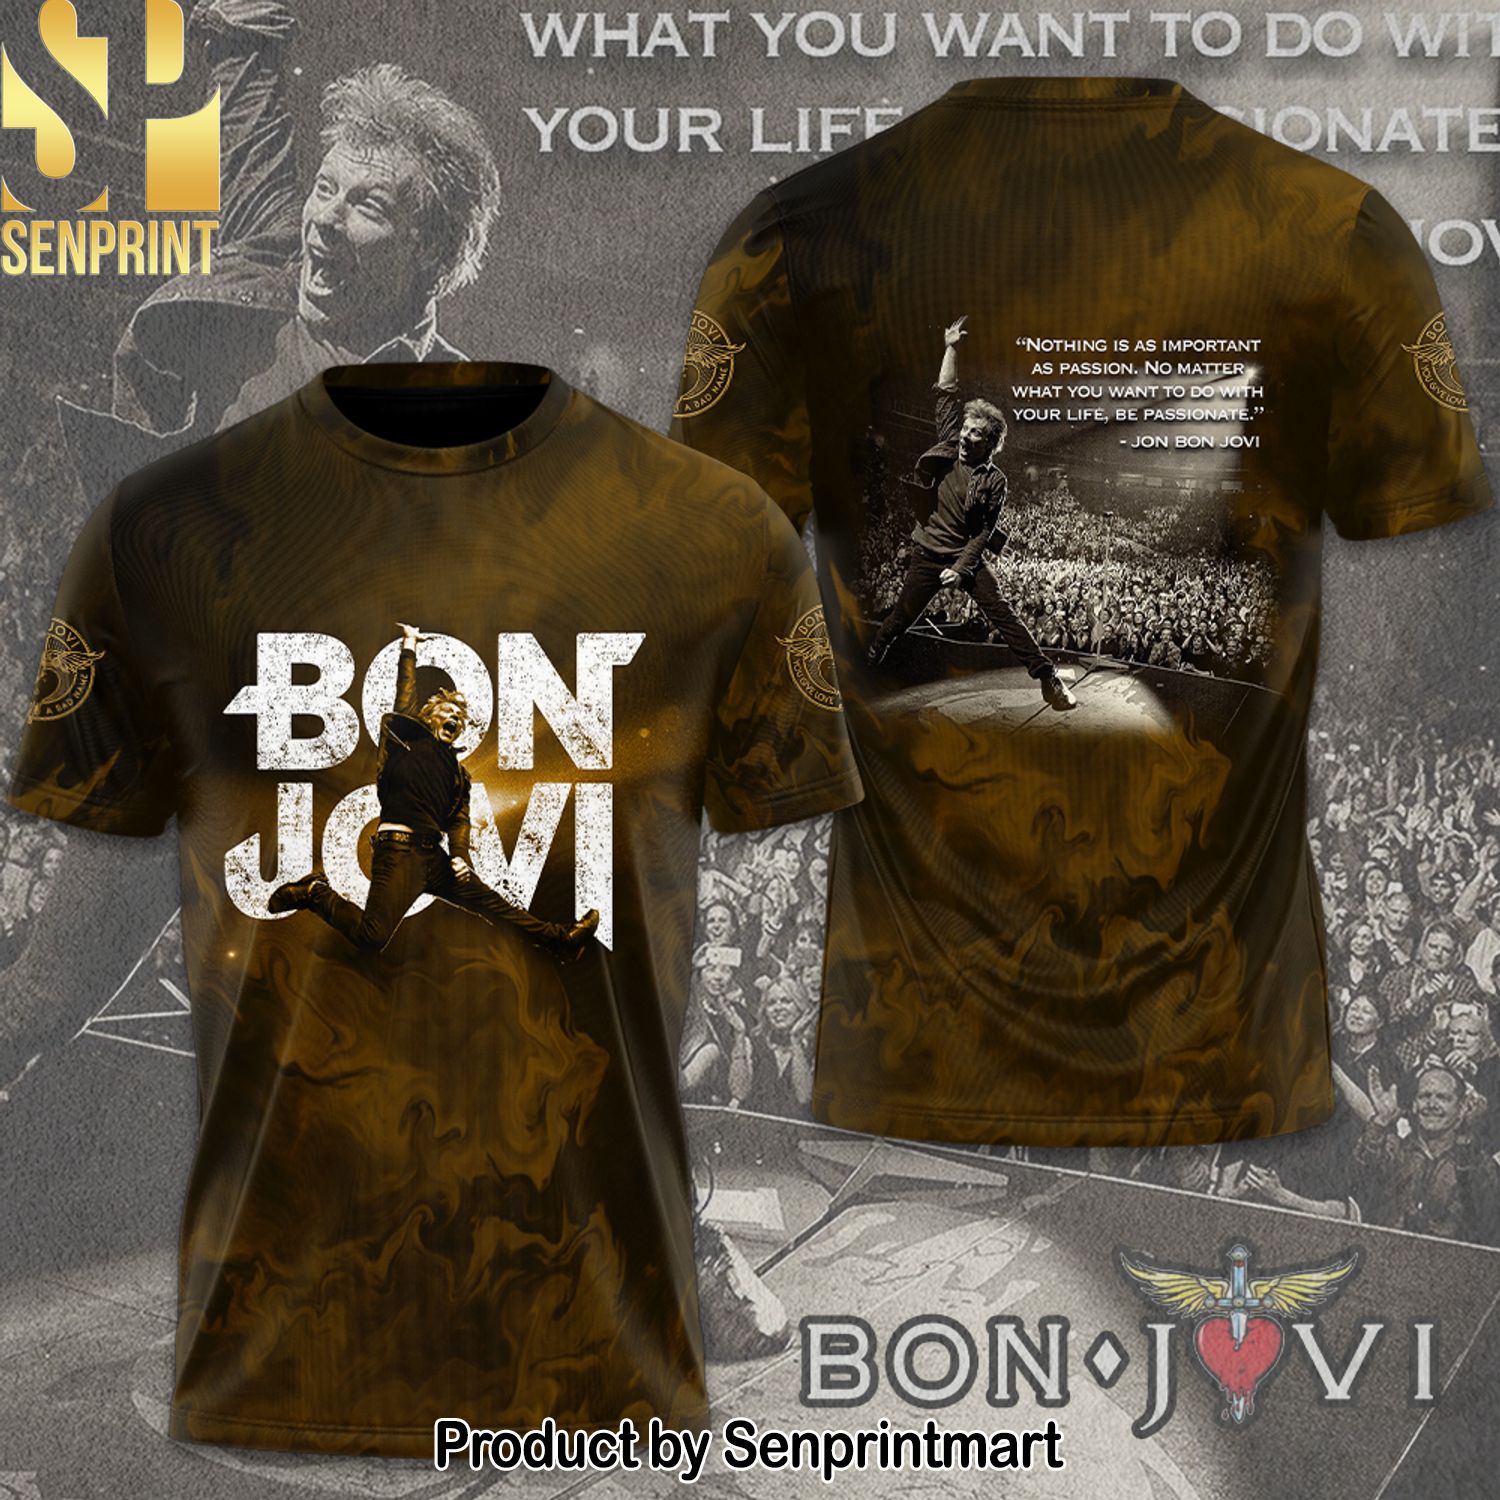 Bon Jovi Full Printing Shirt – SEN0145